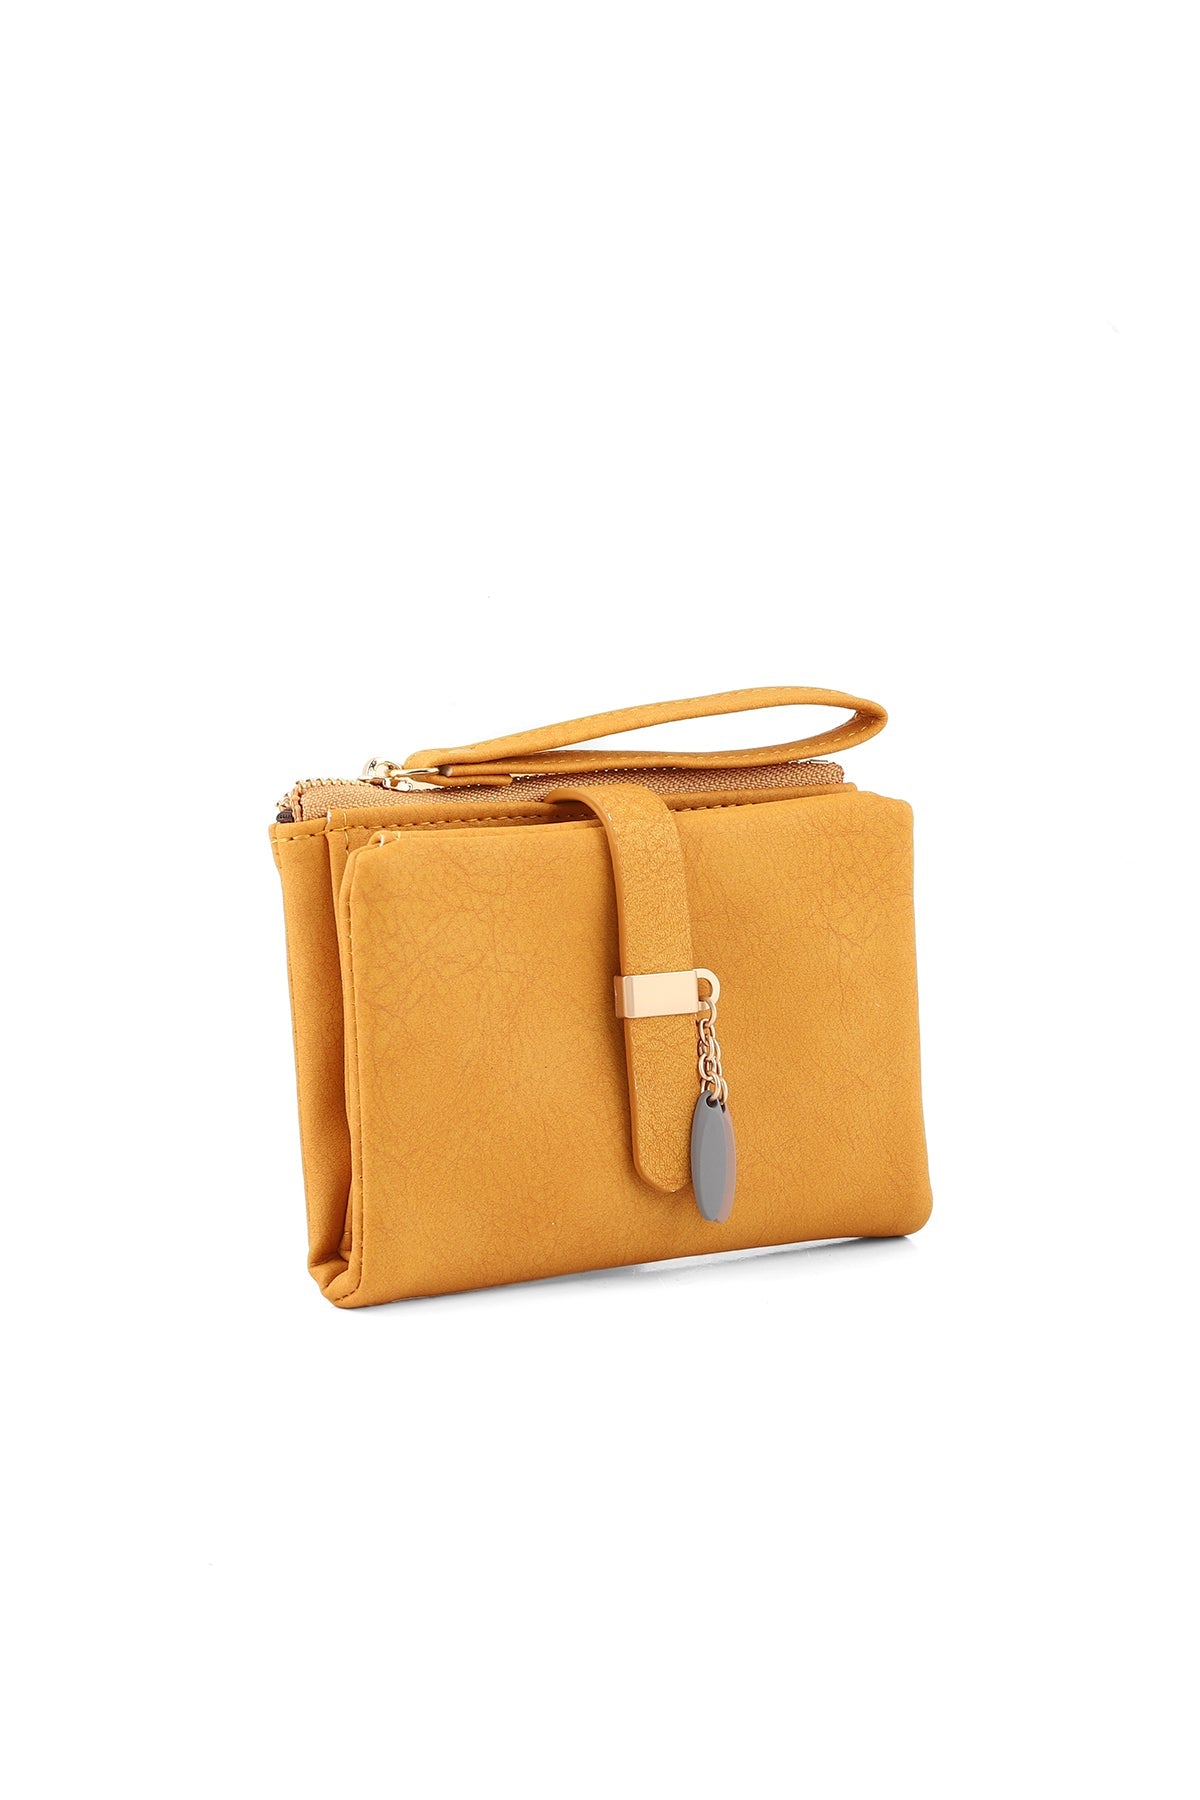 Wristlet Wallet B26037-Yellow